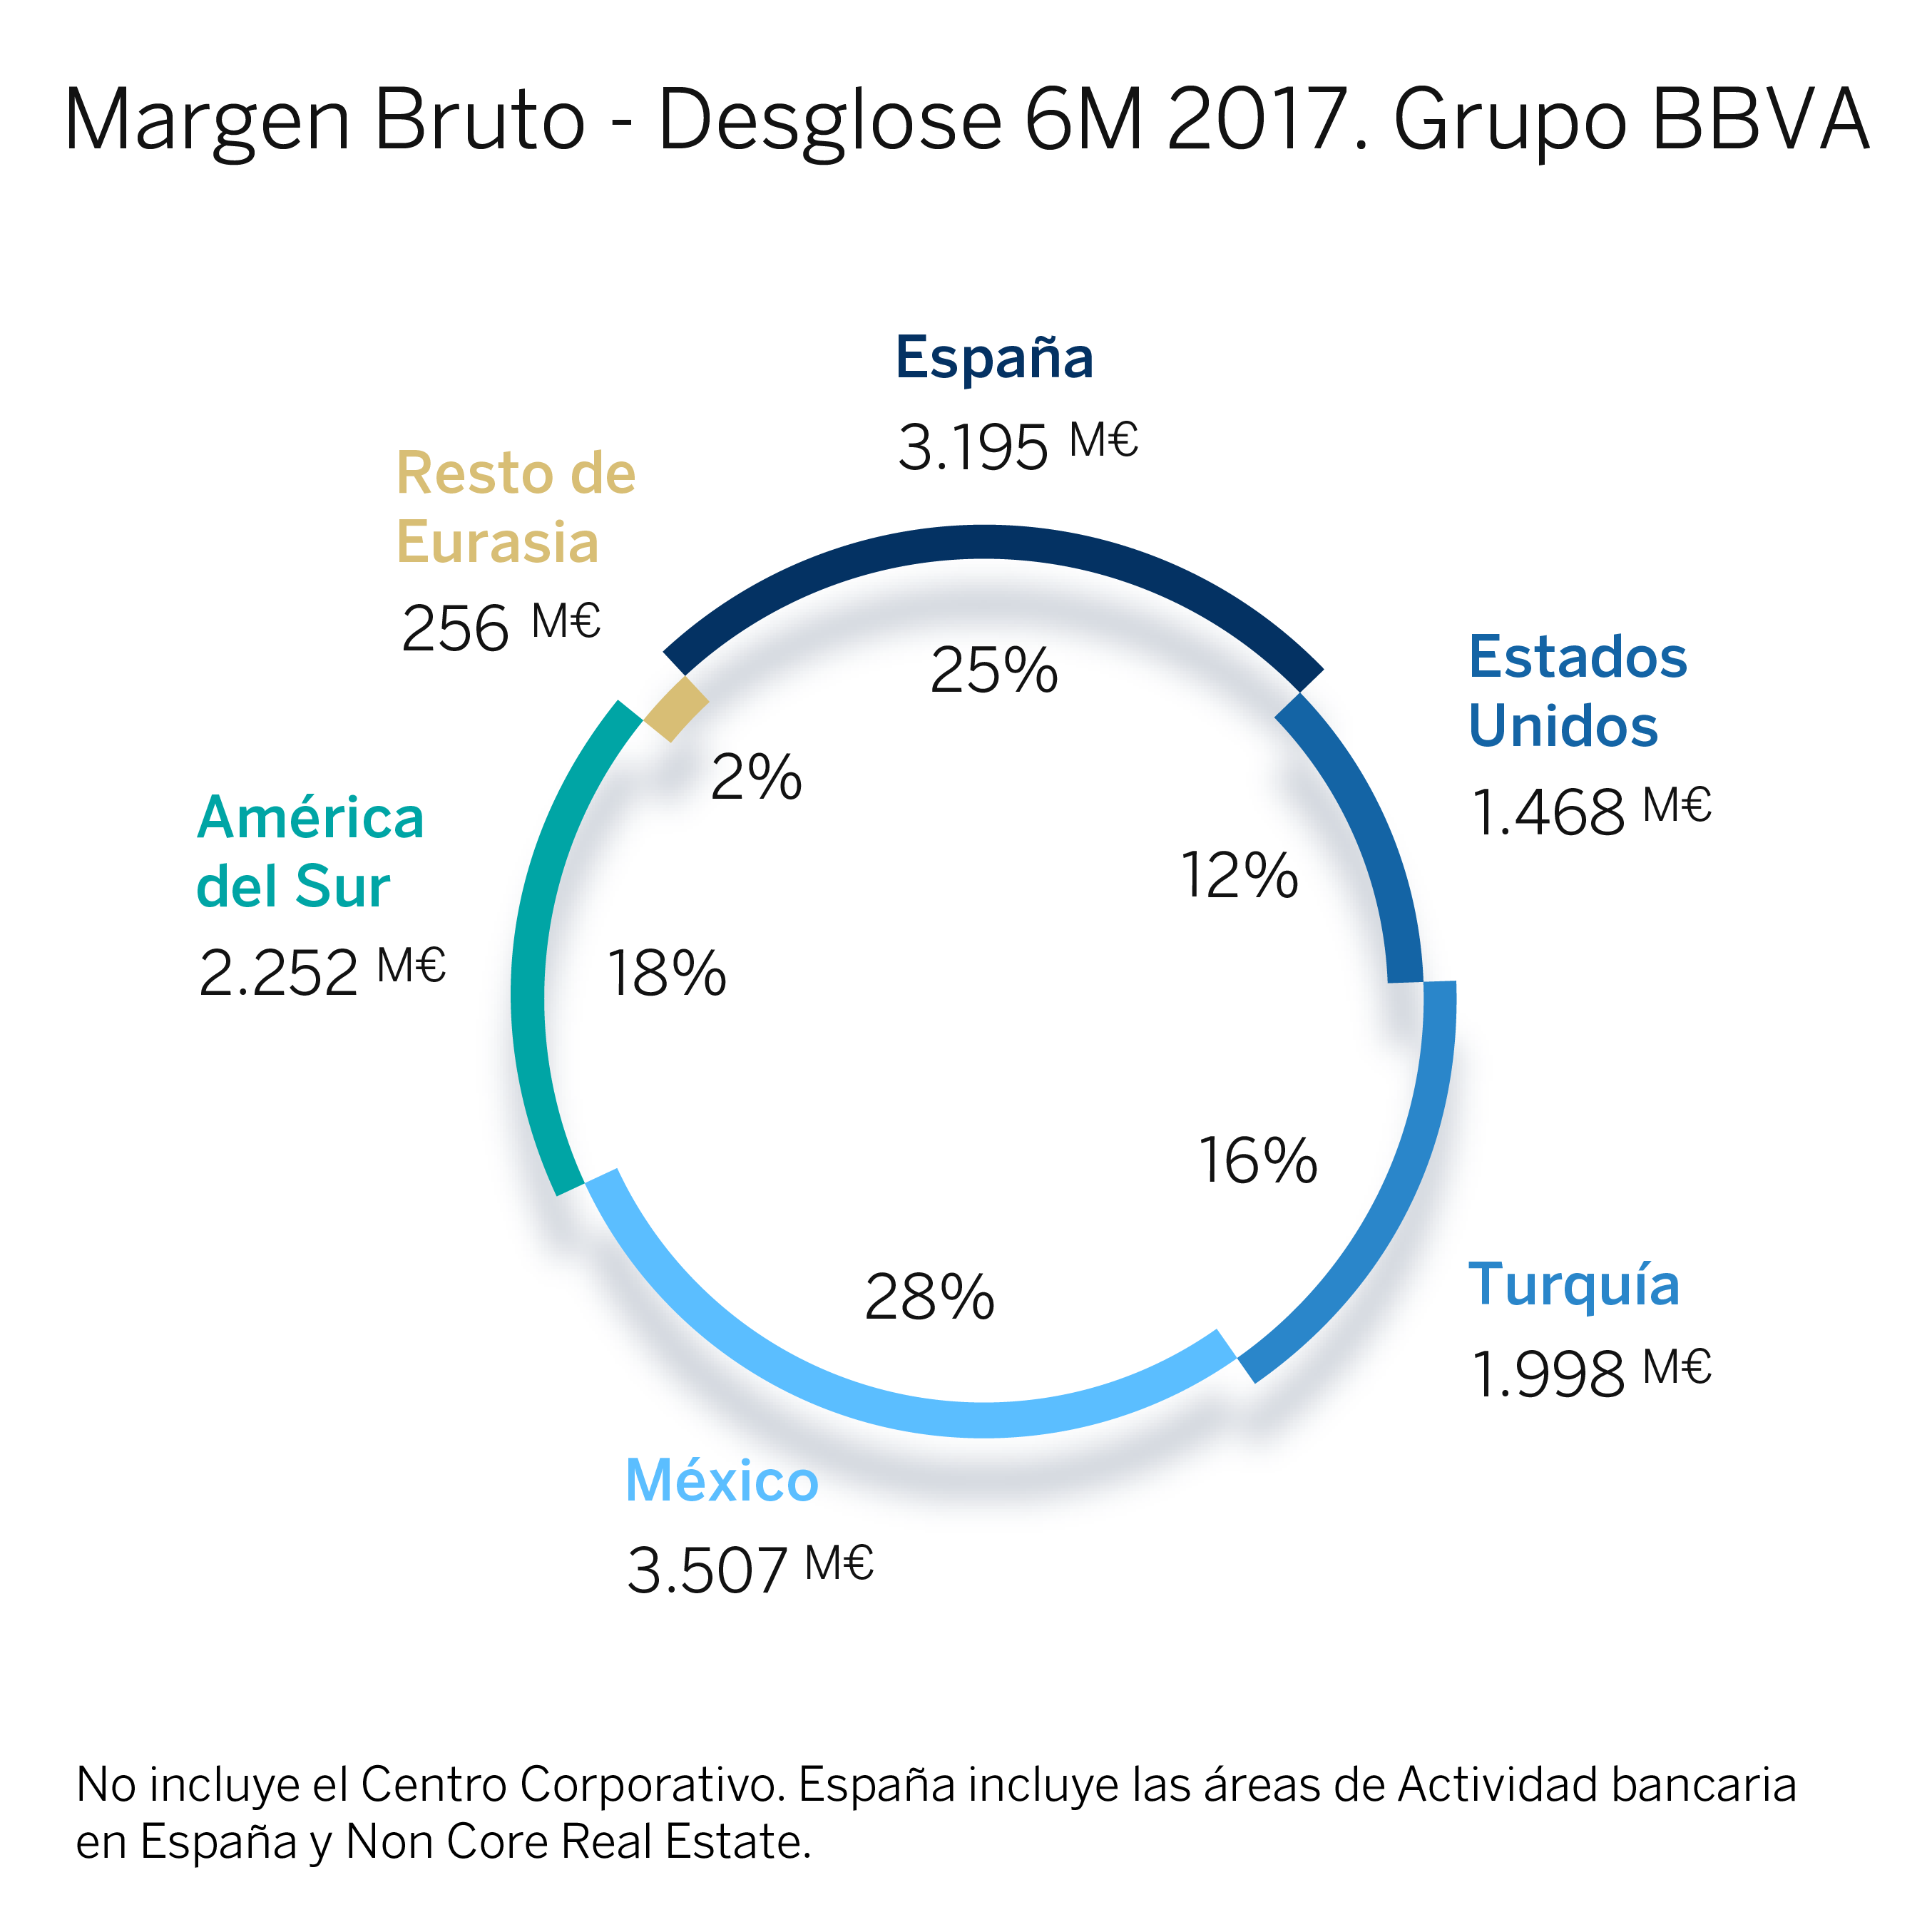 Margen bruto - Grupo BBVA 6M 2017